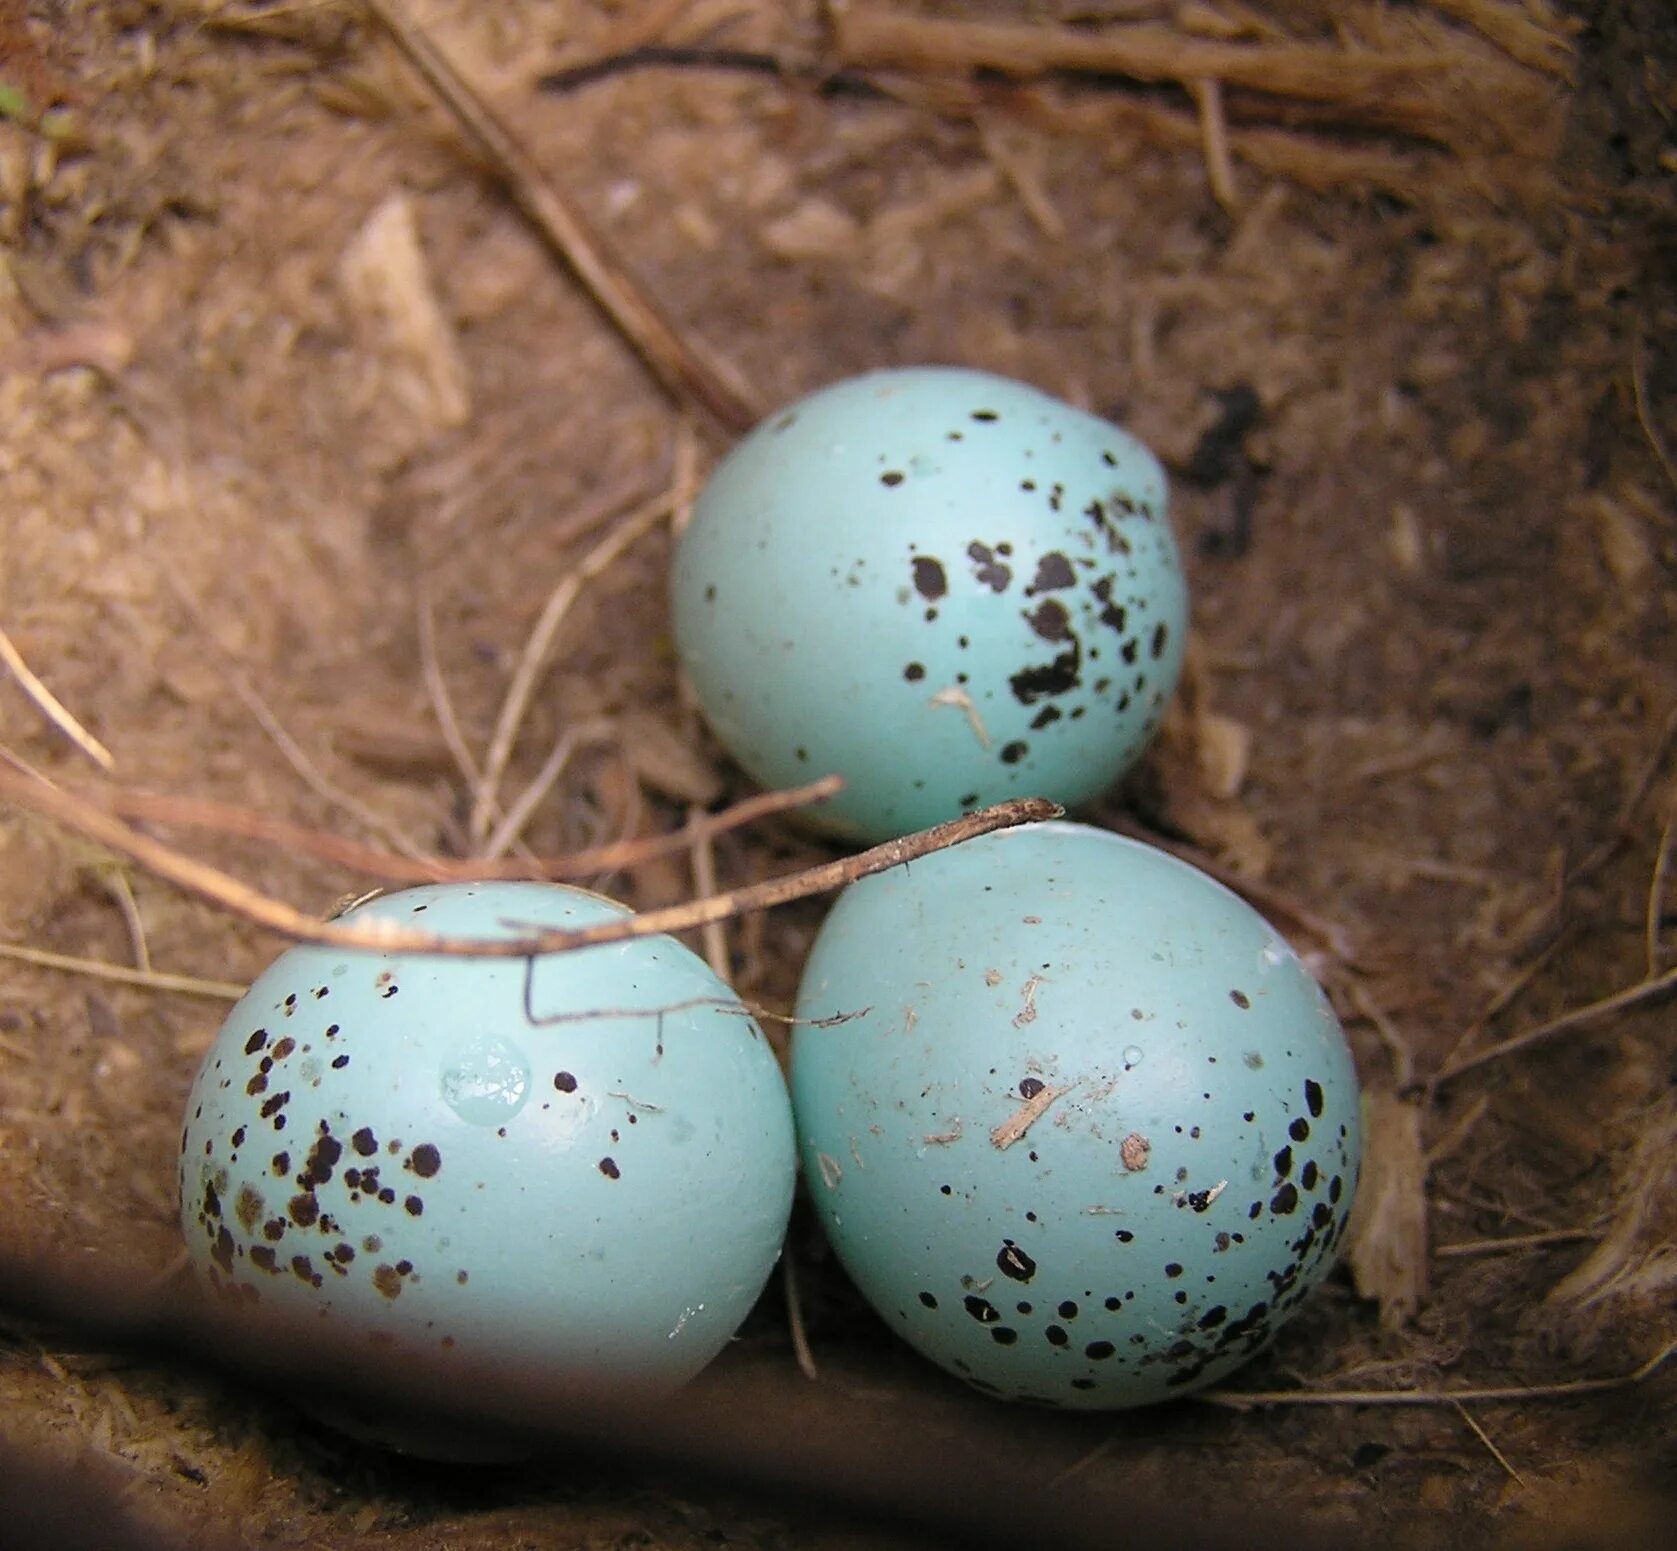 Певчий Дрозд голубые яйца. Яйца певчего дрозда. Перепелки с голубыми яйцами. Голубые яйца в крапинку. Bird яйца